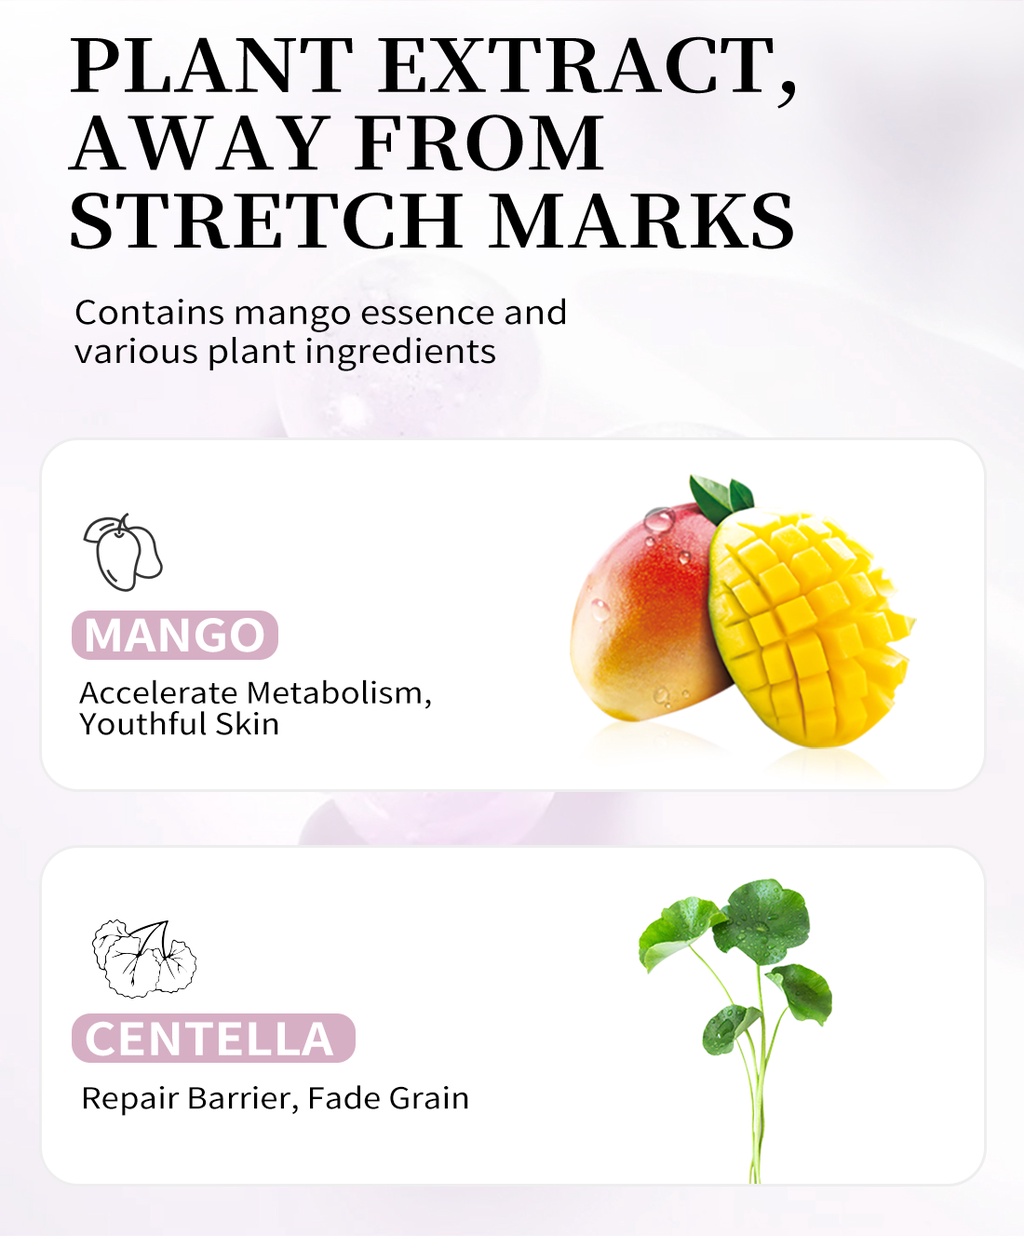 รูปภาพเพิ่มเติมของ RtopR FDA มะม่วงครีมบํารุงผิว ลดรอยแผลเป็น รอยแตกลาย ครีมทาท้องลาย ลดรอยแตกลาย ท้องลาย ริ้วรอยจากการตั้งครรภ์ - Stretch Mark Cream 40 กรัม